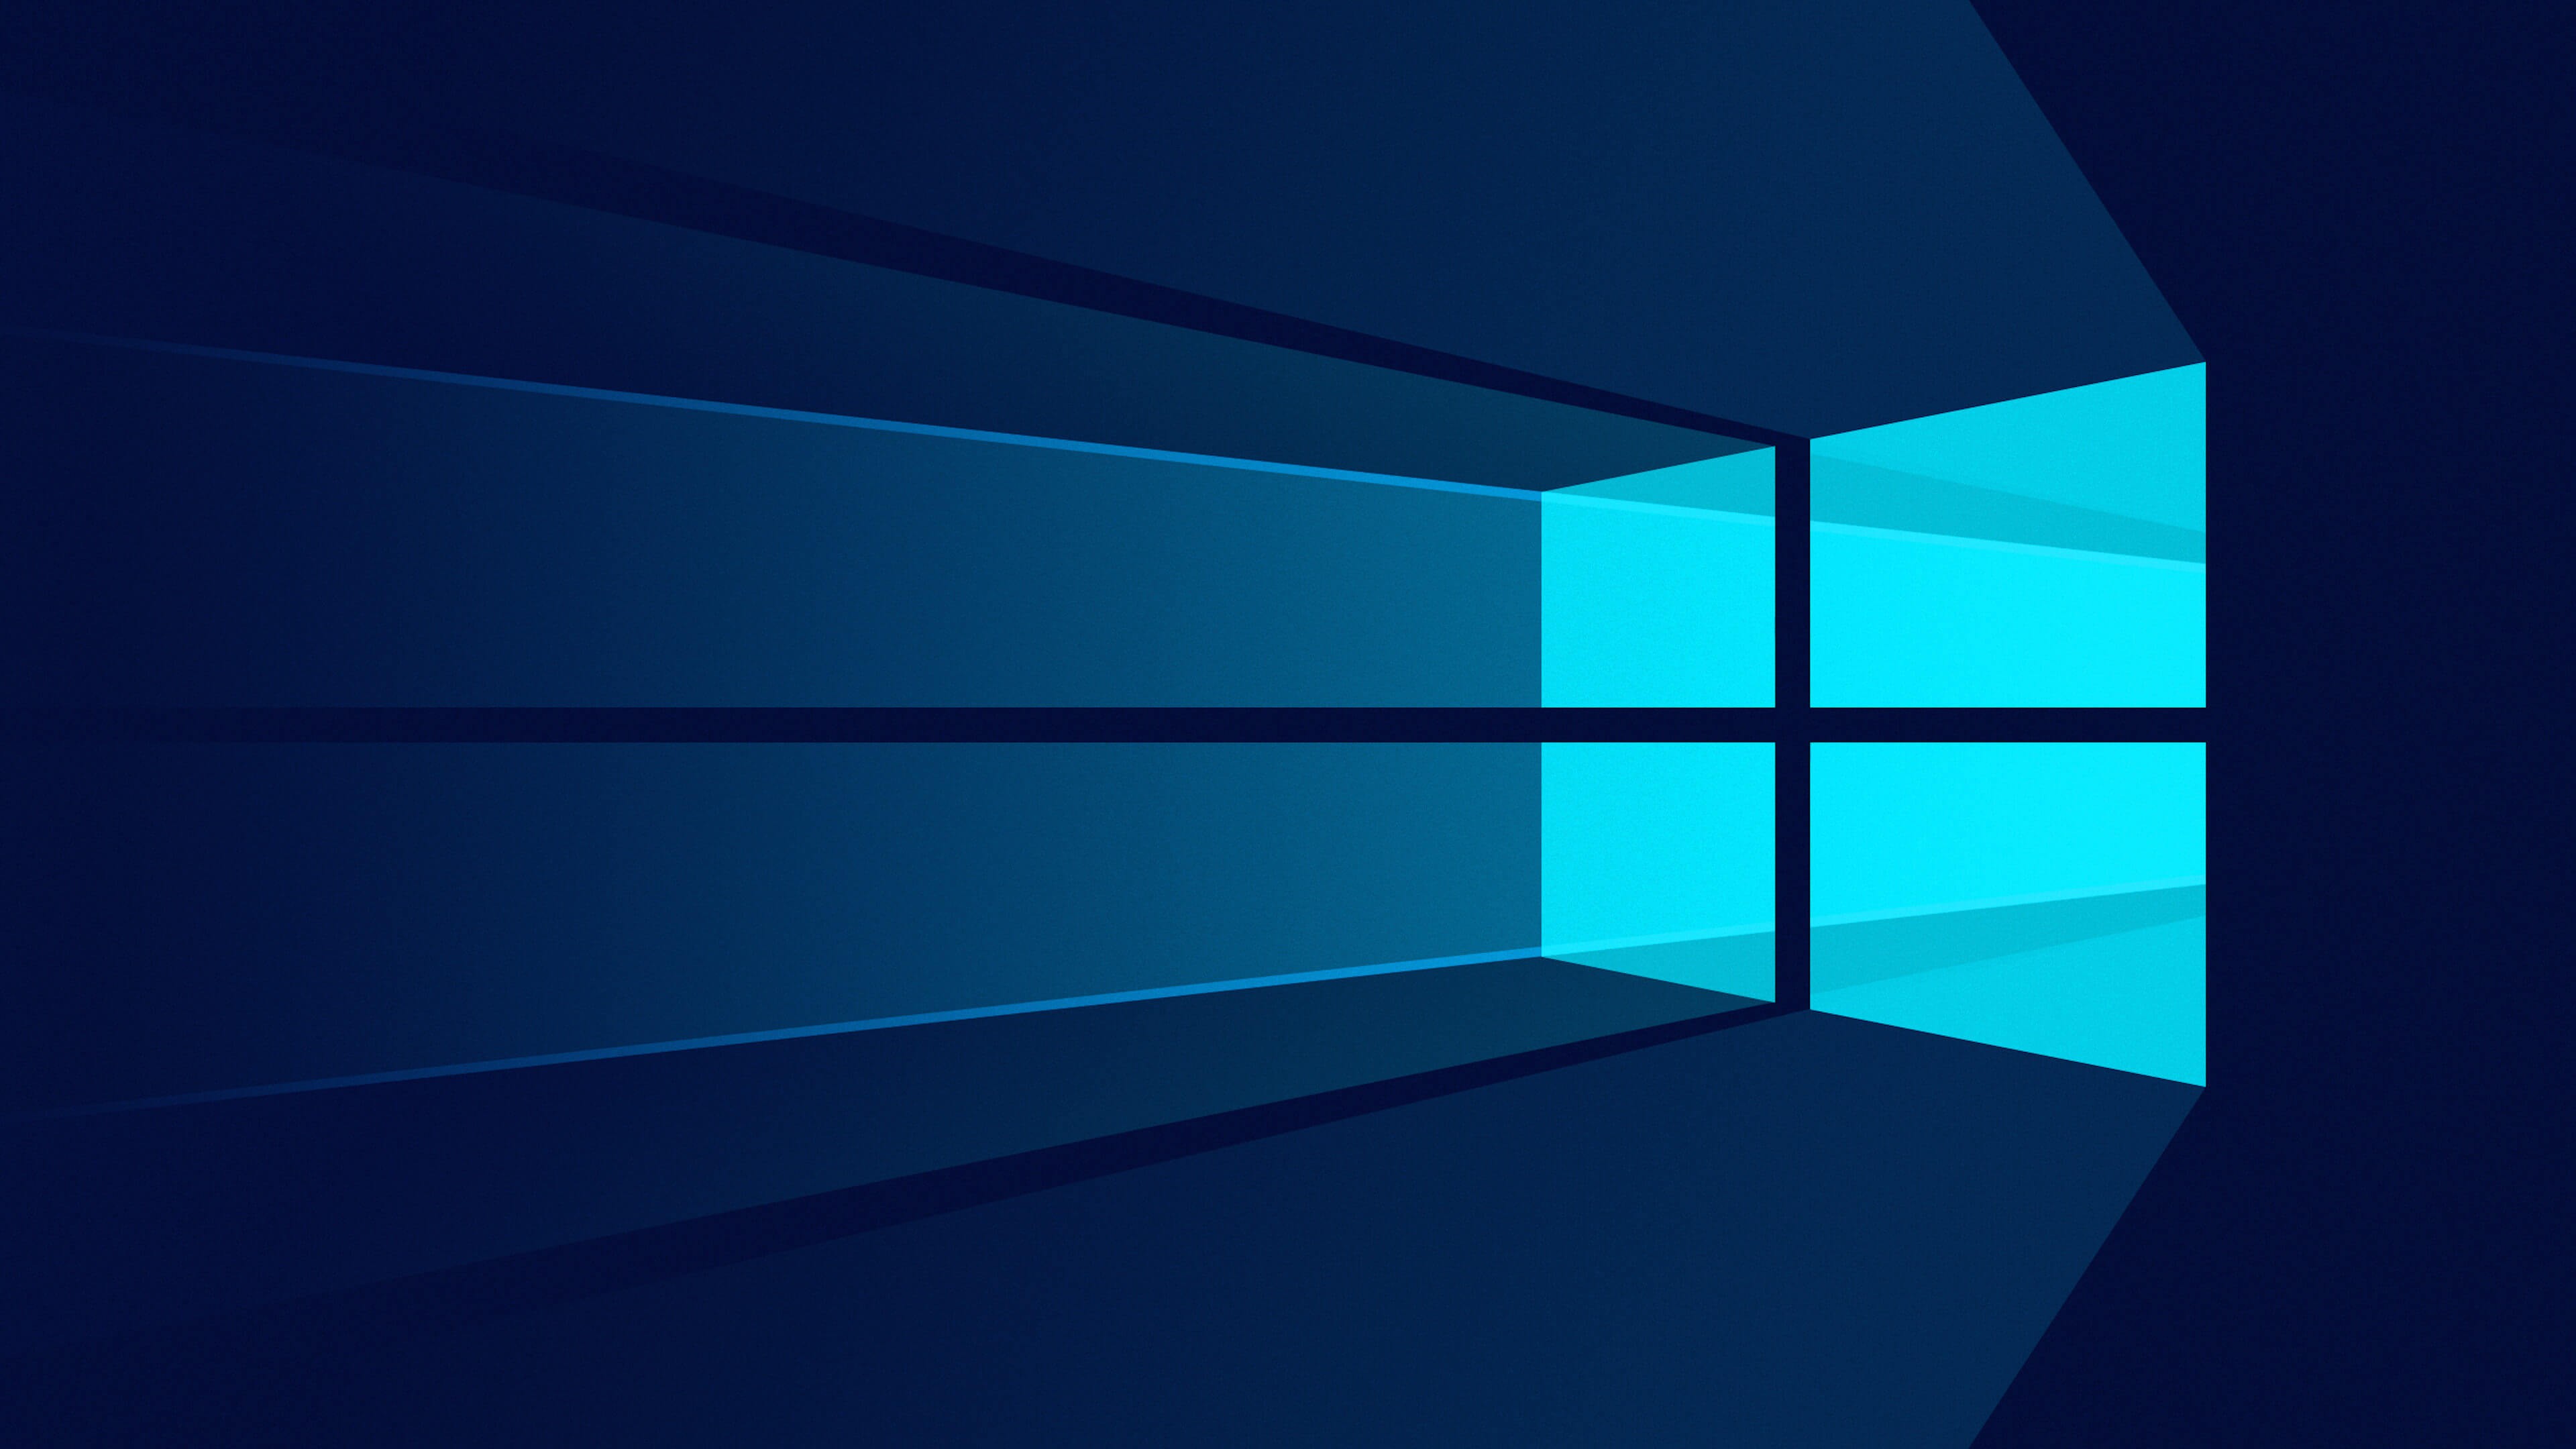 Windows 10 Hintergrundbilder 4k